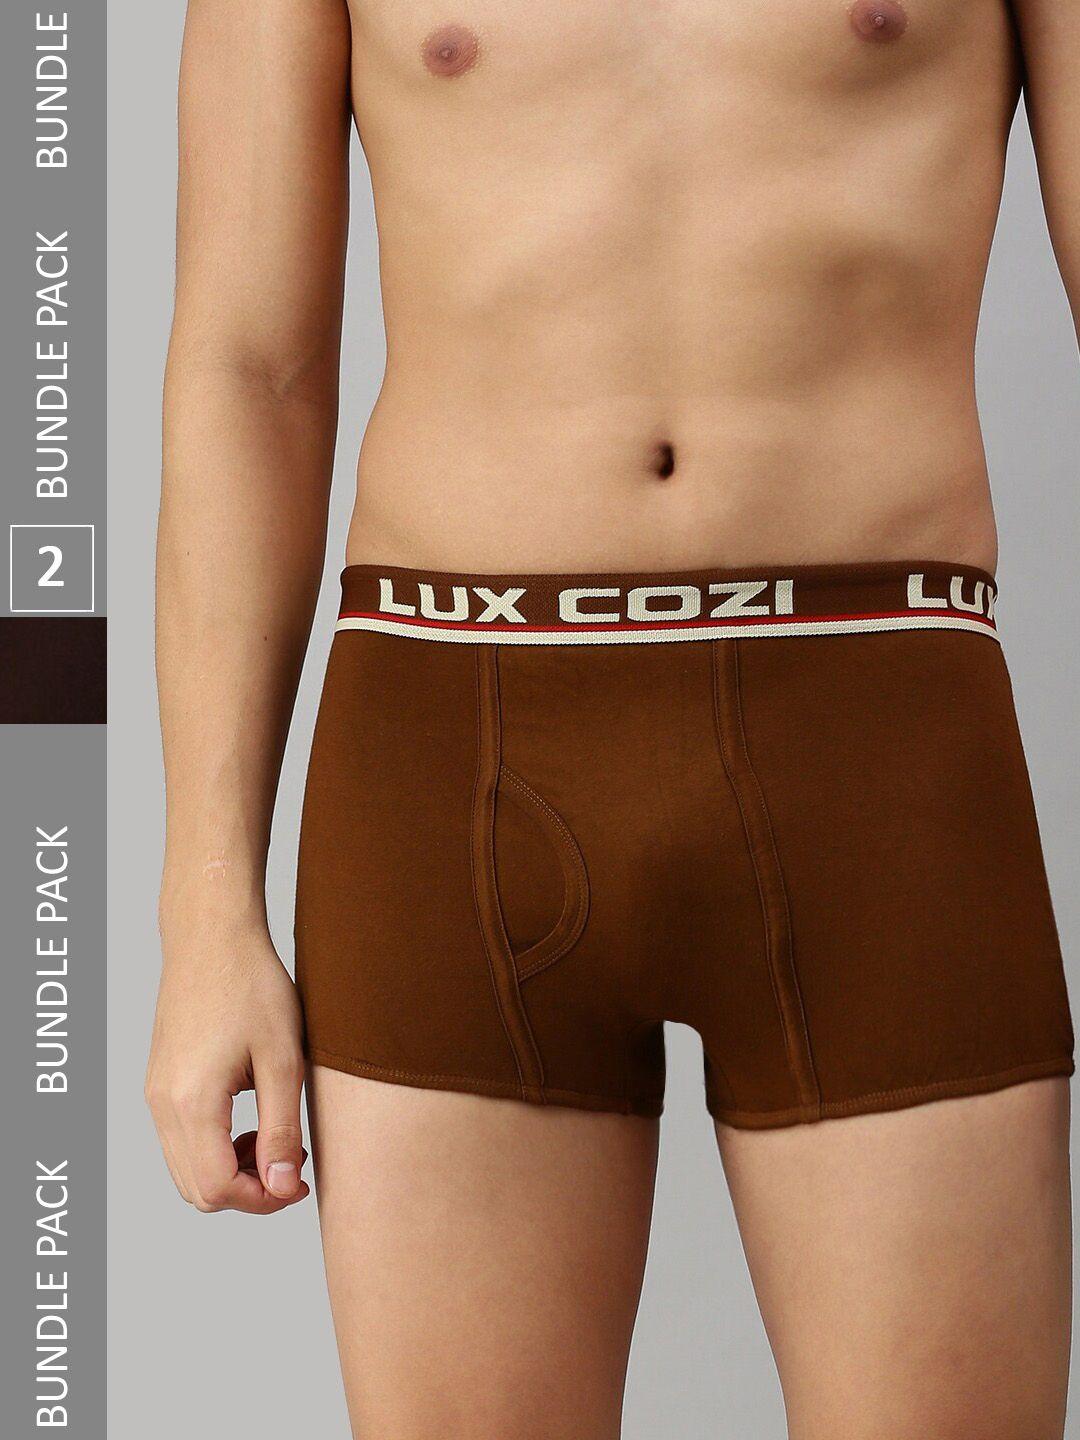 lux cozi men plus size pack of 2 trunks- cozi_bigshot_slp_brn_mst_2pc